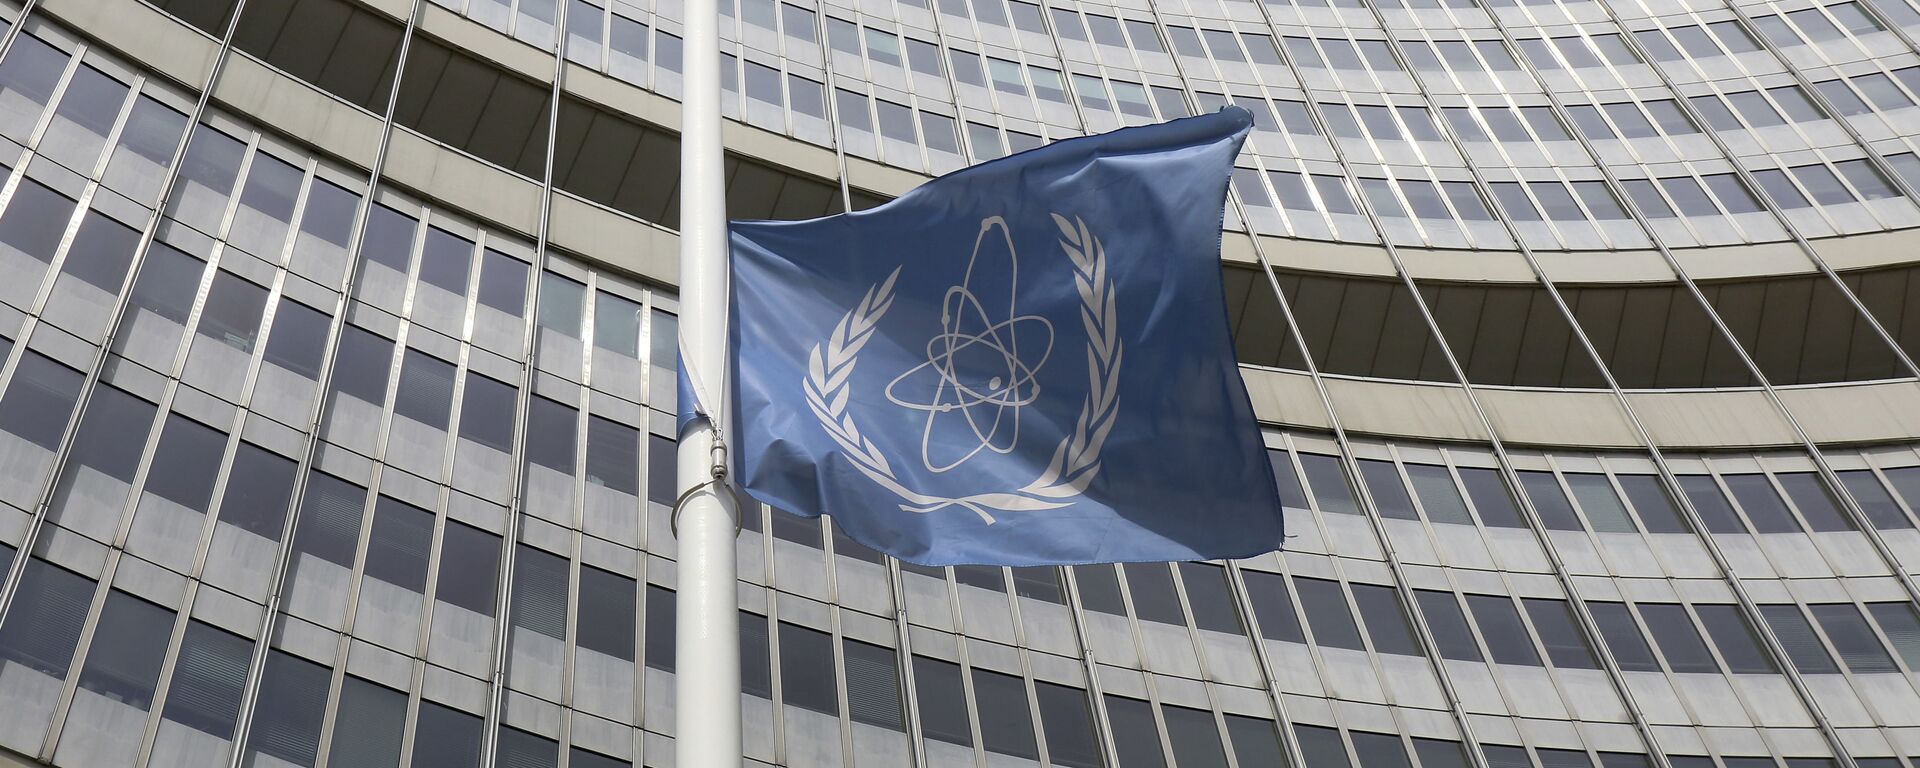 ატომური ენერგეტიკის საერთაშორისო სააგენტოს დროშა - Sputnik საქართველო, 1920, 22.02.2021